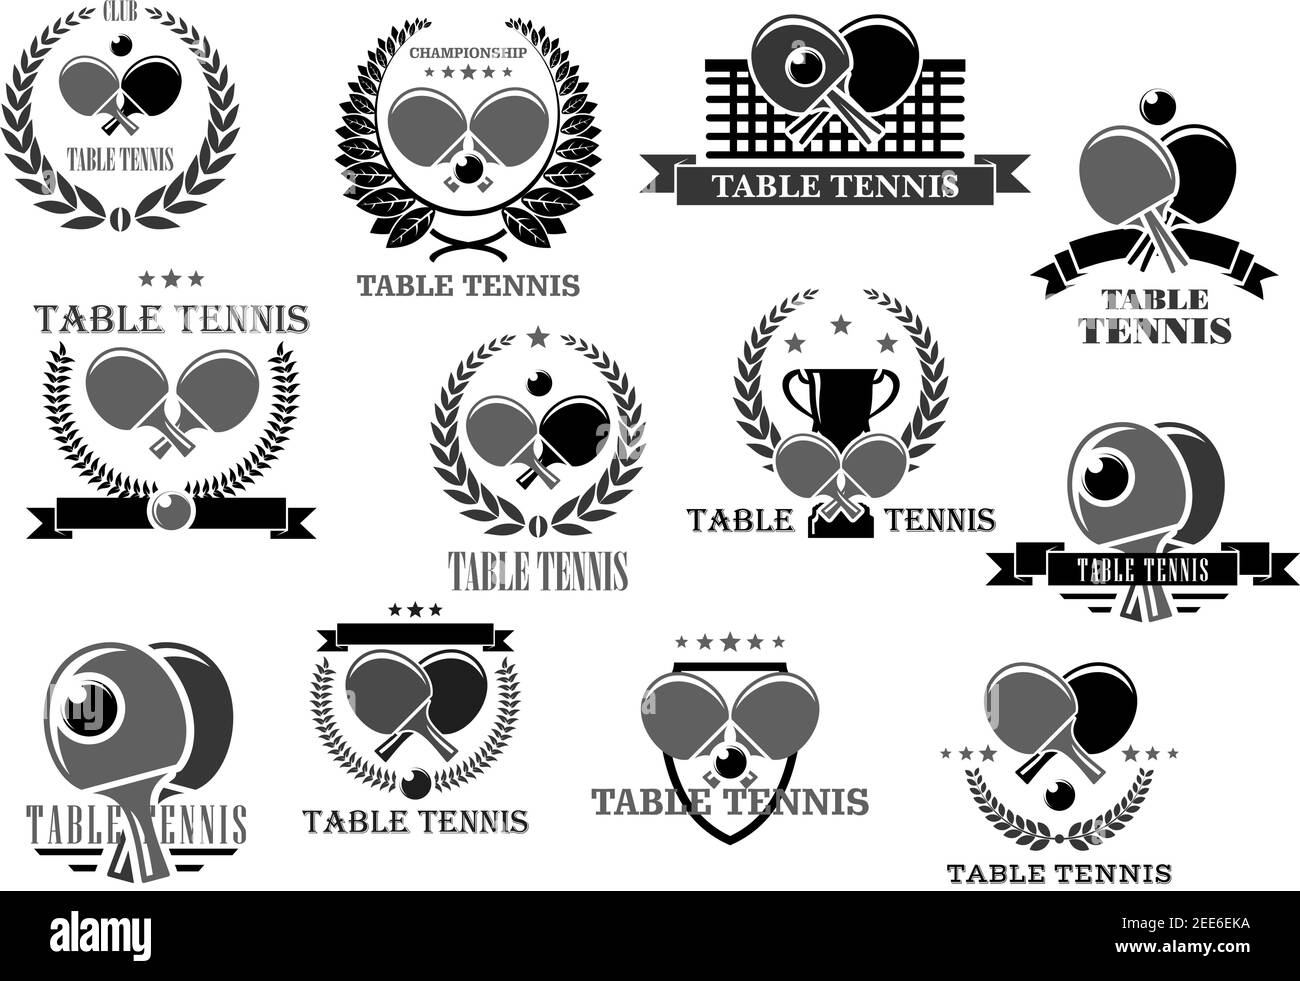 Badges de tennis de table pour club de sport ou championnat. Symboles de la balle  de ping-pong et de la raquette sur le filet, ruban de couronne de lauriers  de victoire et